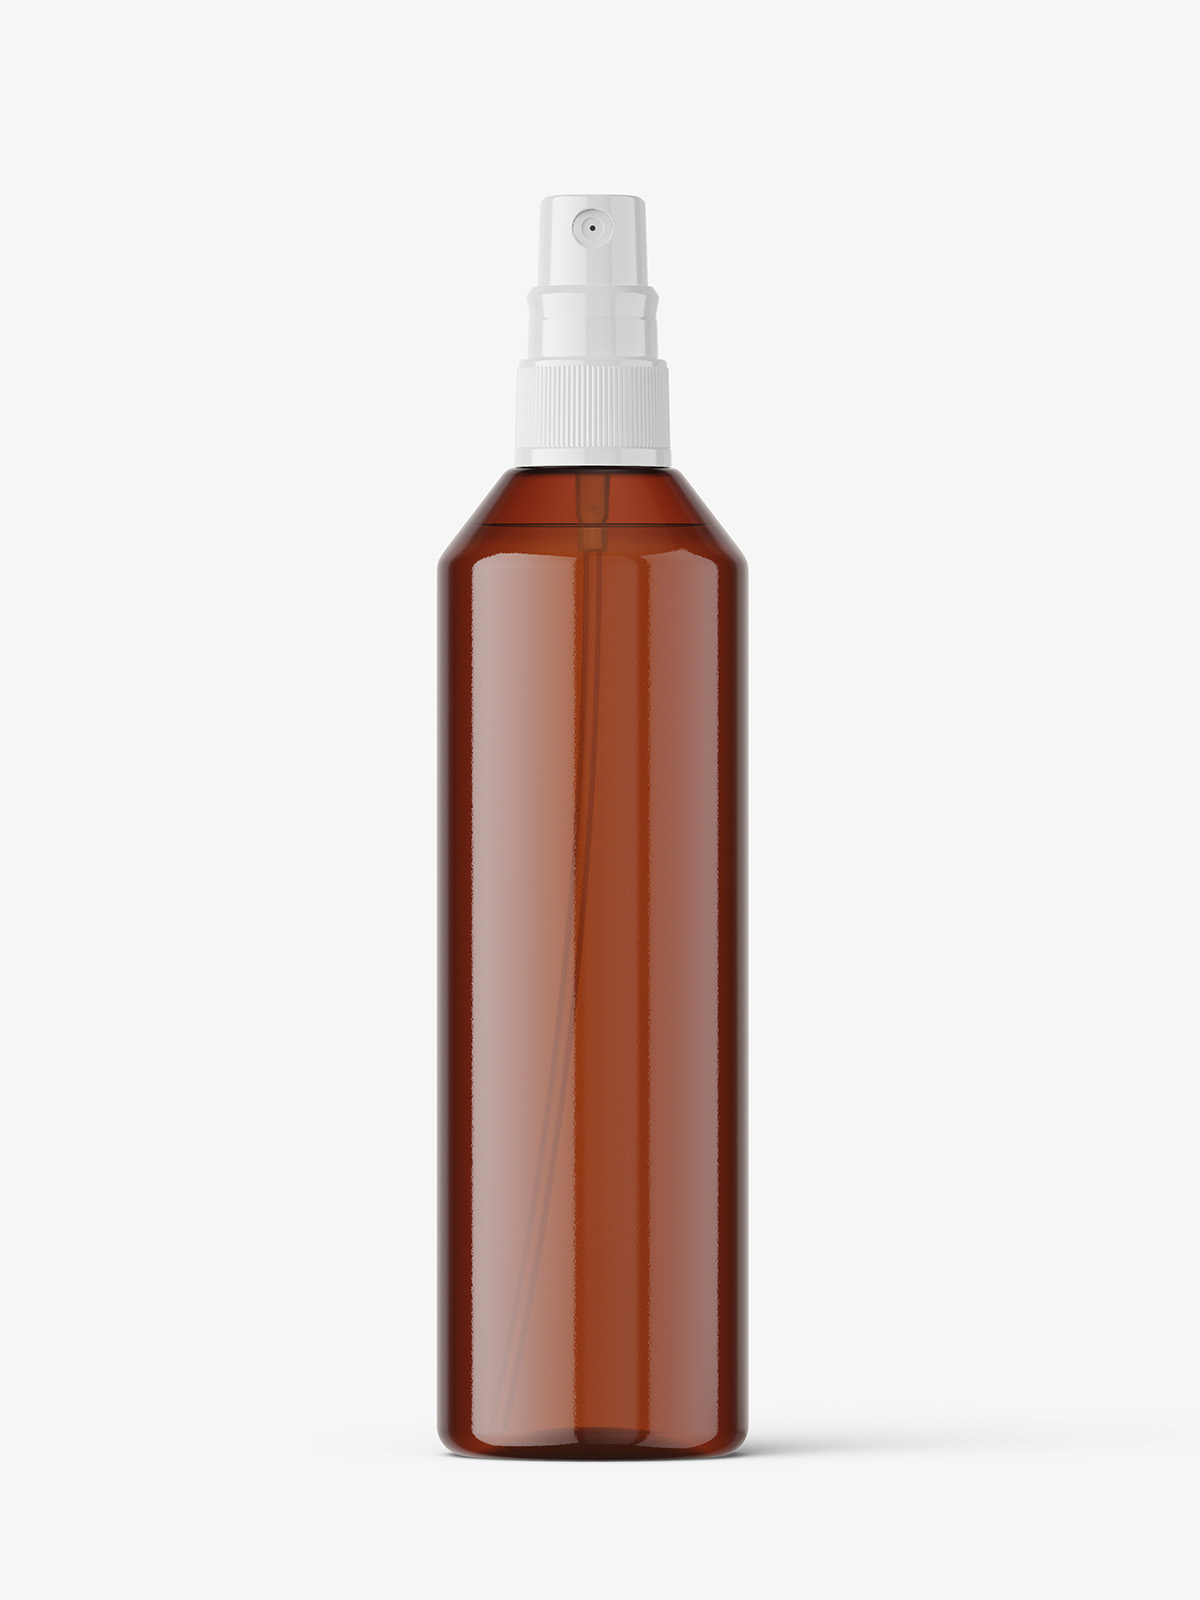 Download Amber spray bottle mockup - Smarty Mockups